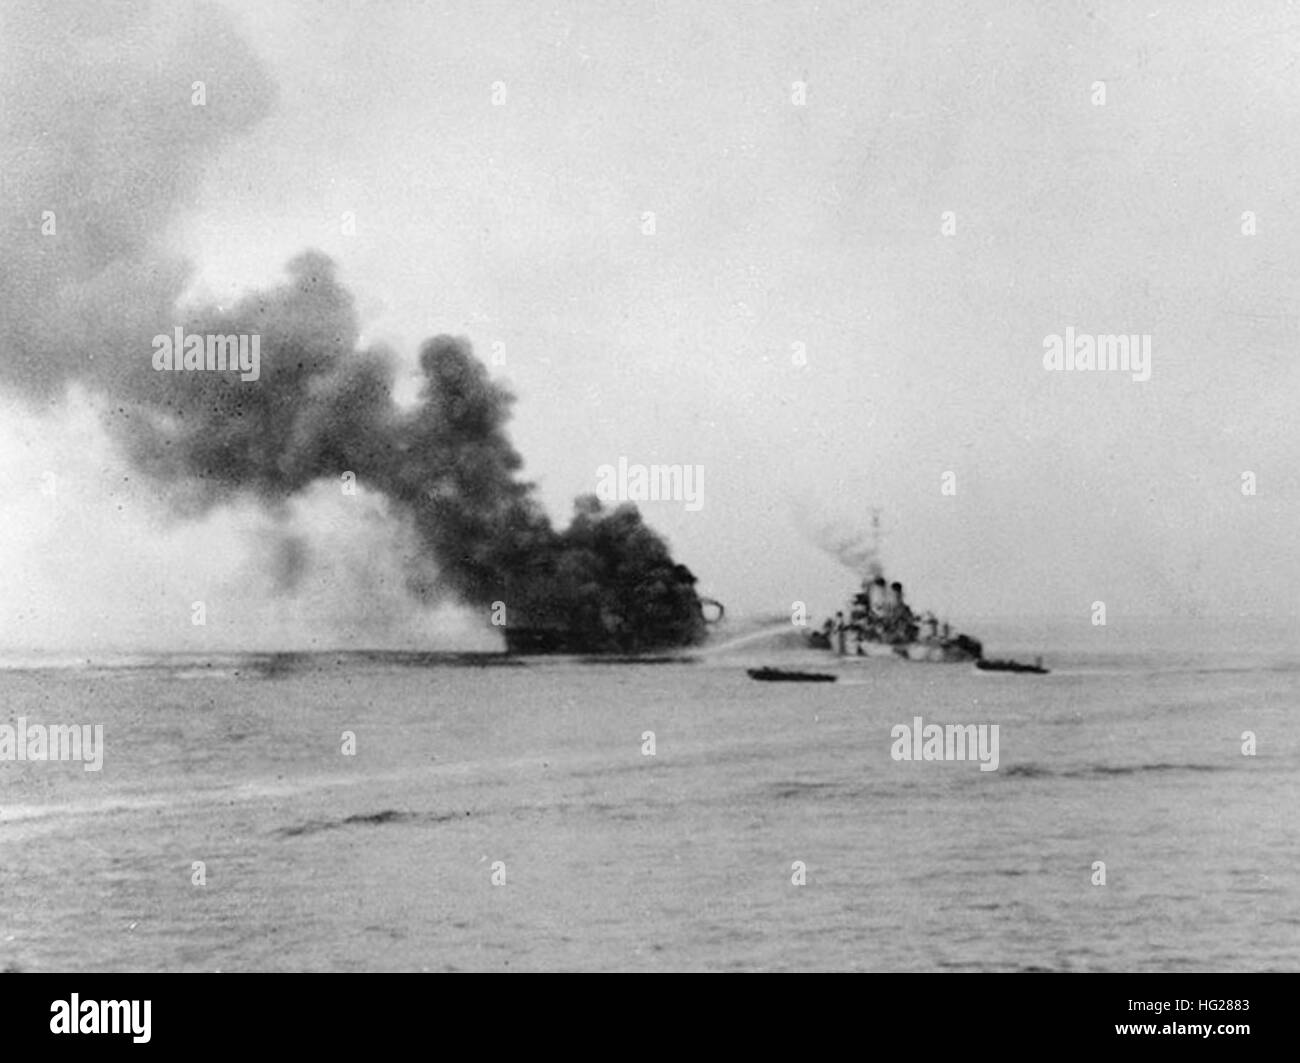 (APD-16) La combustion dans la baie d'Ormoc, Leyte, Philippines, après qu'elle a été touché par un kamikaze le 7 décembre 1944. USS O'Brien (DD-725) est aux côtés de la lutte contre les incendies, comme les engins de débarquement circle pour sauver les survivants. Photographié de l'USS Crosby (APD-17). Photographie de la Marine américaine officielle, aujourd'hui dans les collections des Archives nationales. USS O'Brien (DD-725) la lutte contre les incendies sur l'USS Ward (APD-16) dans la baie d'Ormoc, Décembre 1944 Banque D'Images